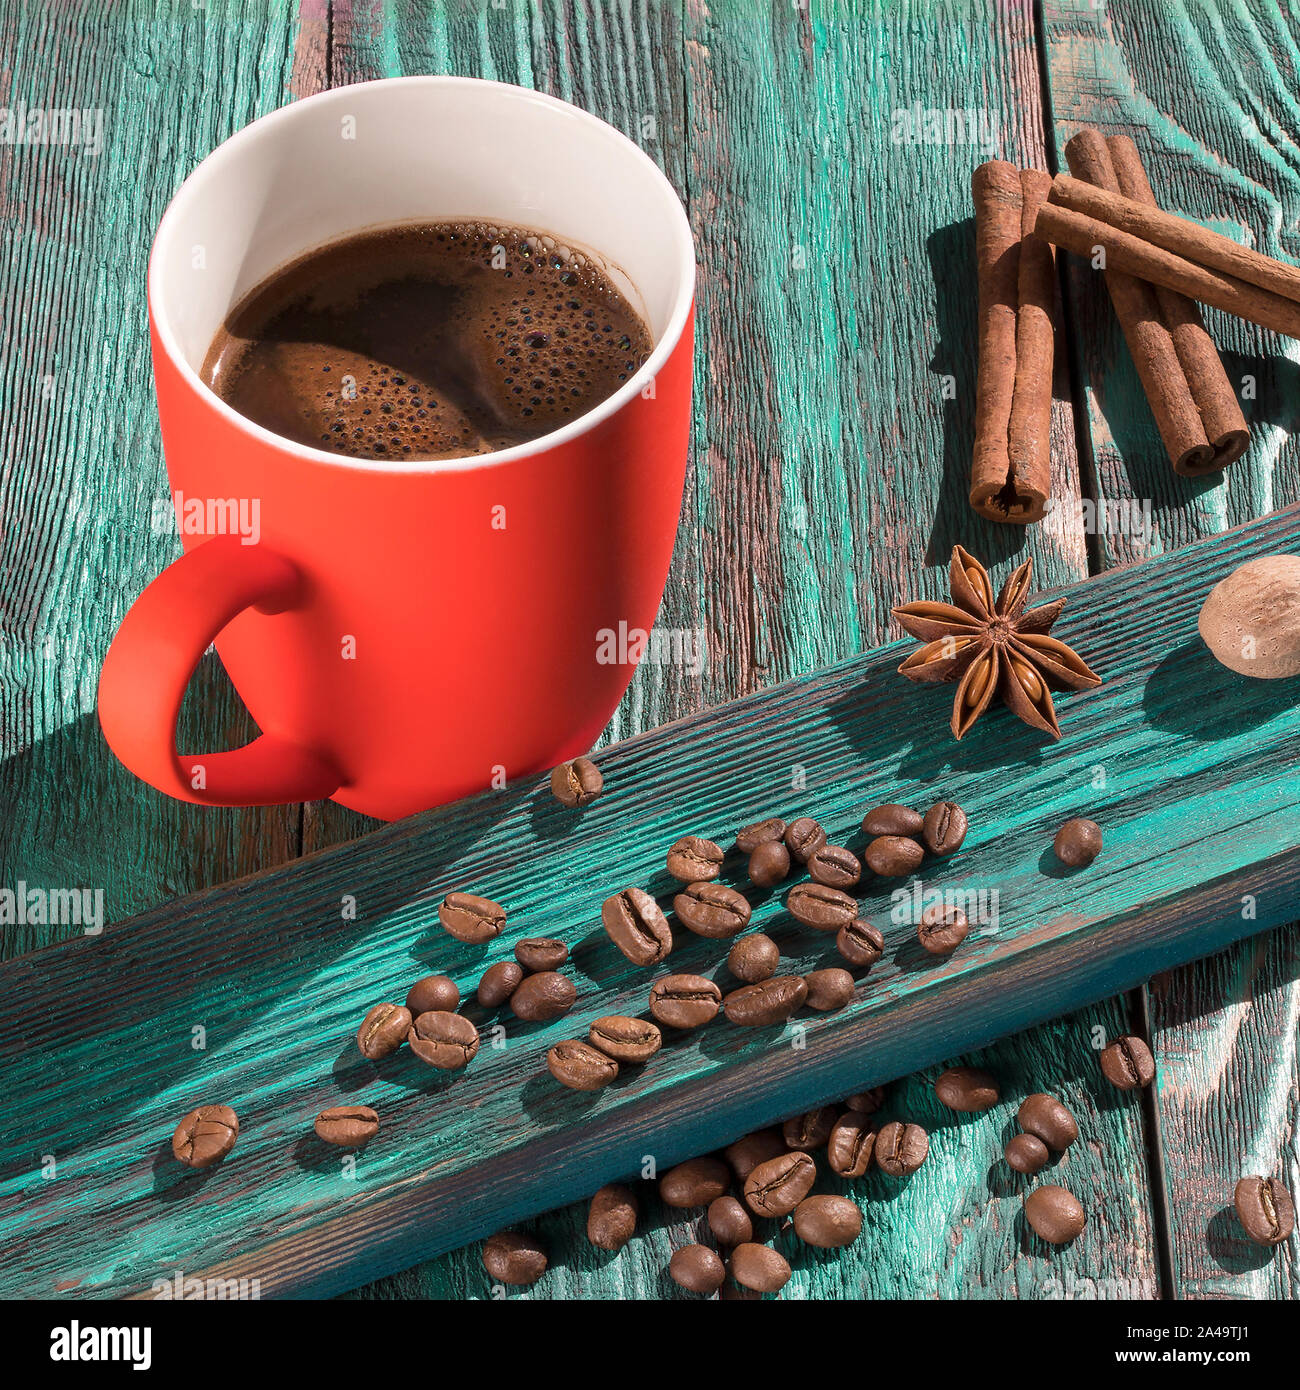 Una tazza di caffè appena fatto e fagioli arrosto su una tavola in legno rustico. Mattina di sole. Brillante coppa del corallo su sfondo turchese. Immagine quadrata Foto Stock